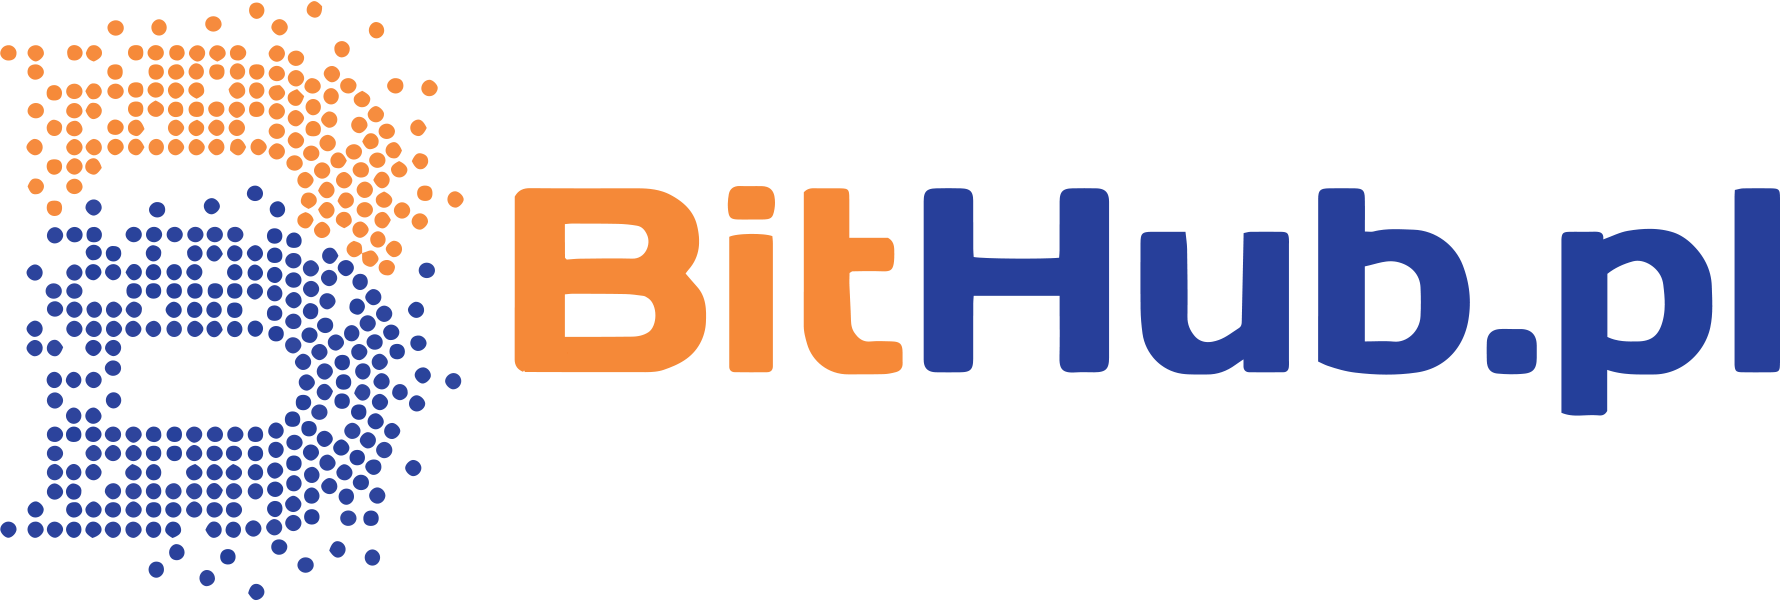 BitHub.pl